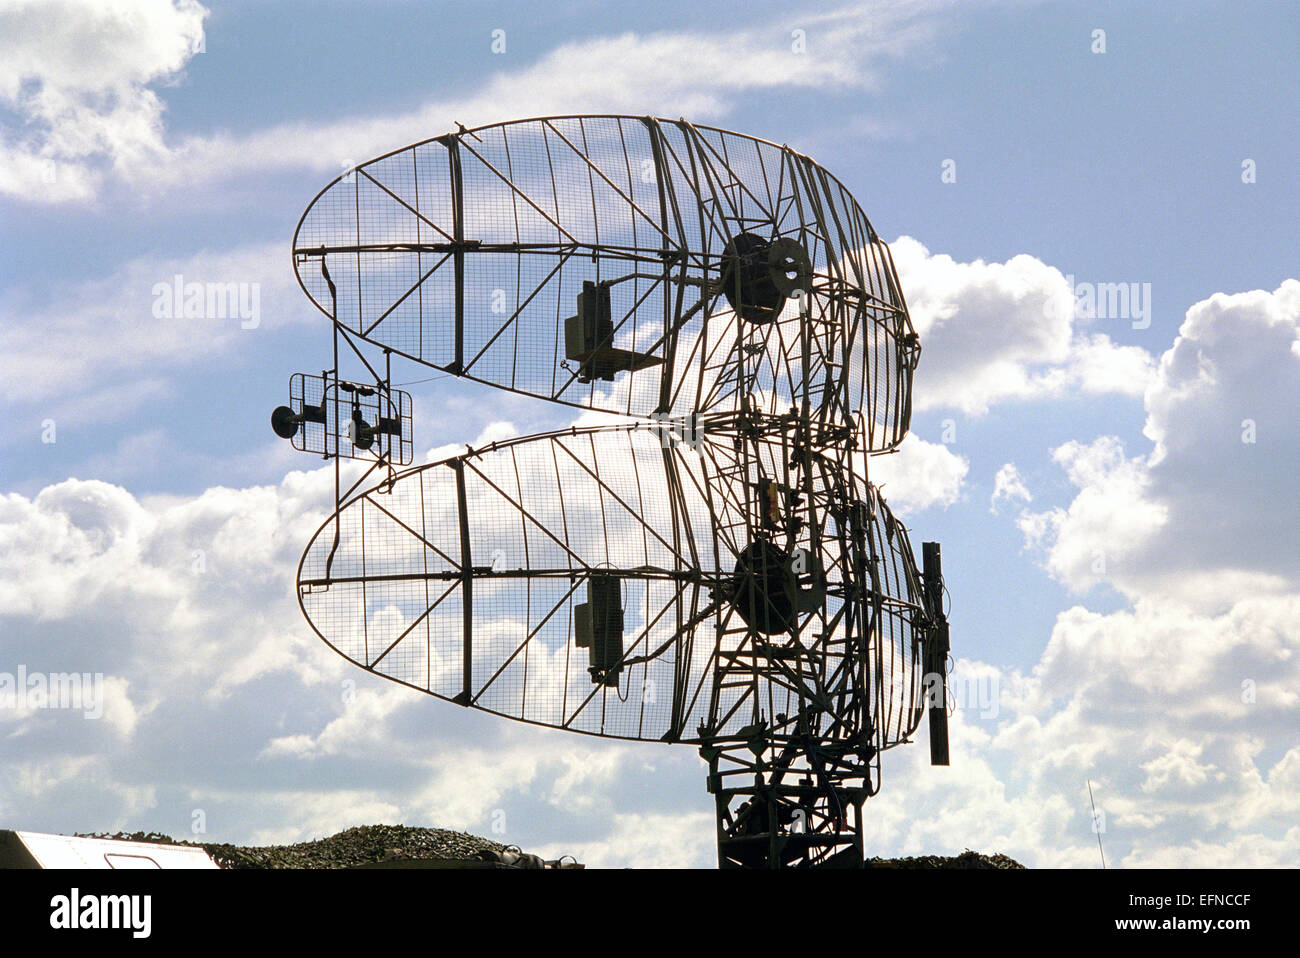 Radarantenne auf einem wolkigen Himmel Hintergrund Stockfoto